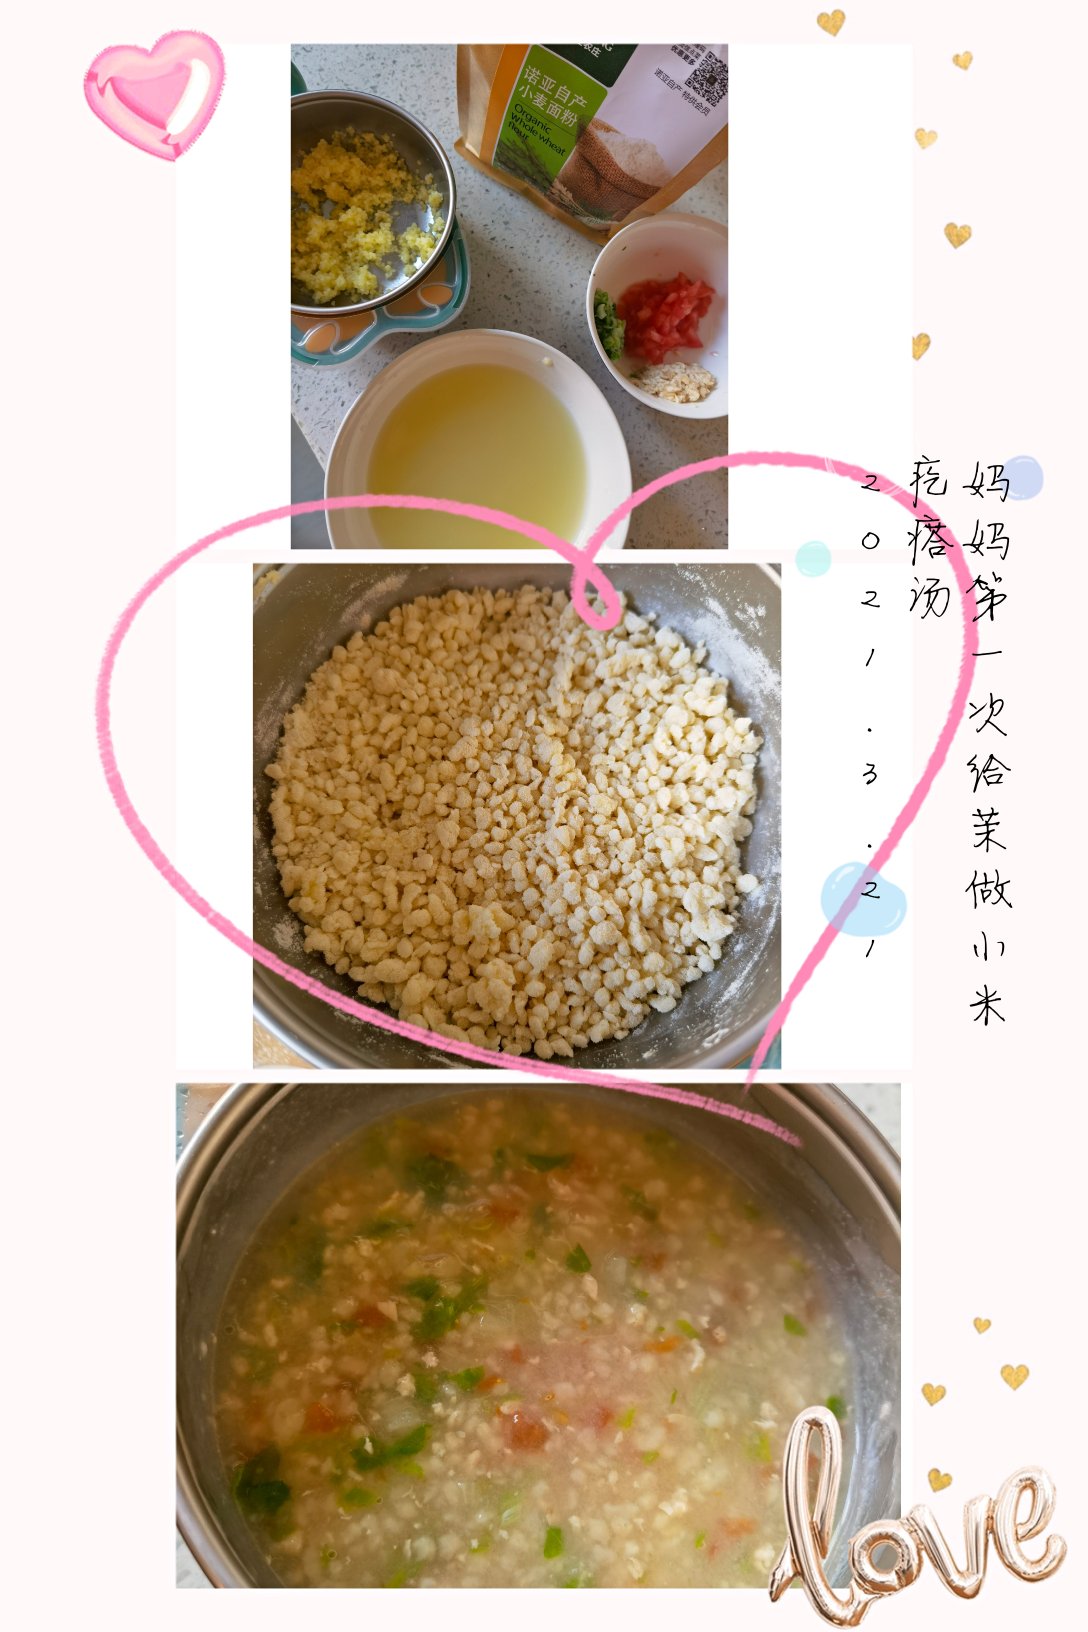 小米疙瘩汤  宝宝健康食谱